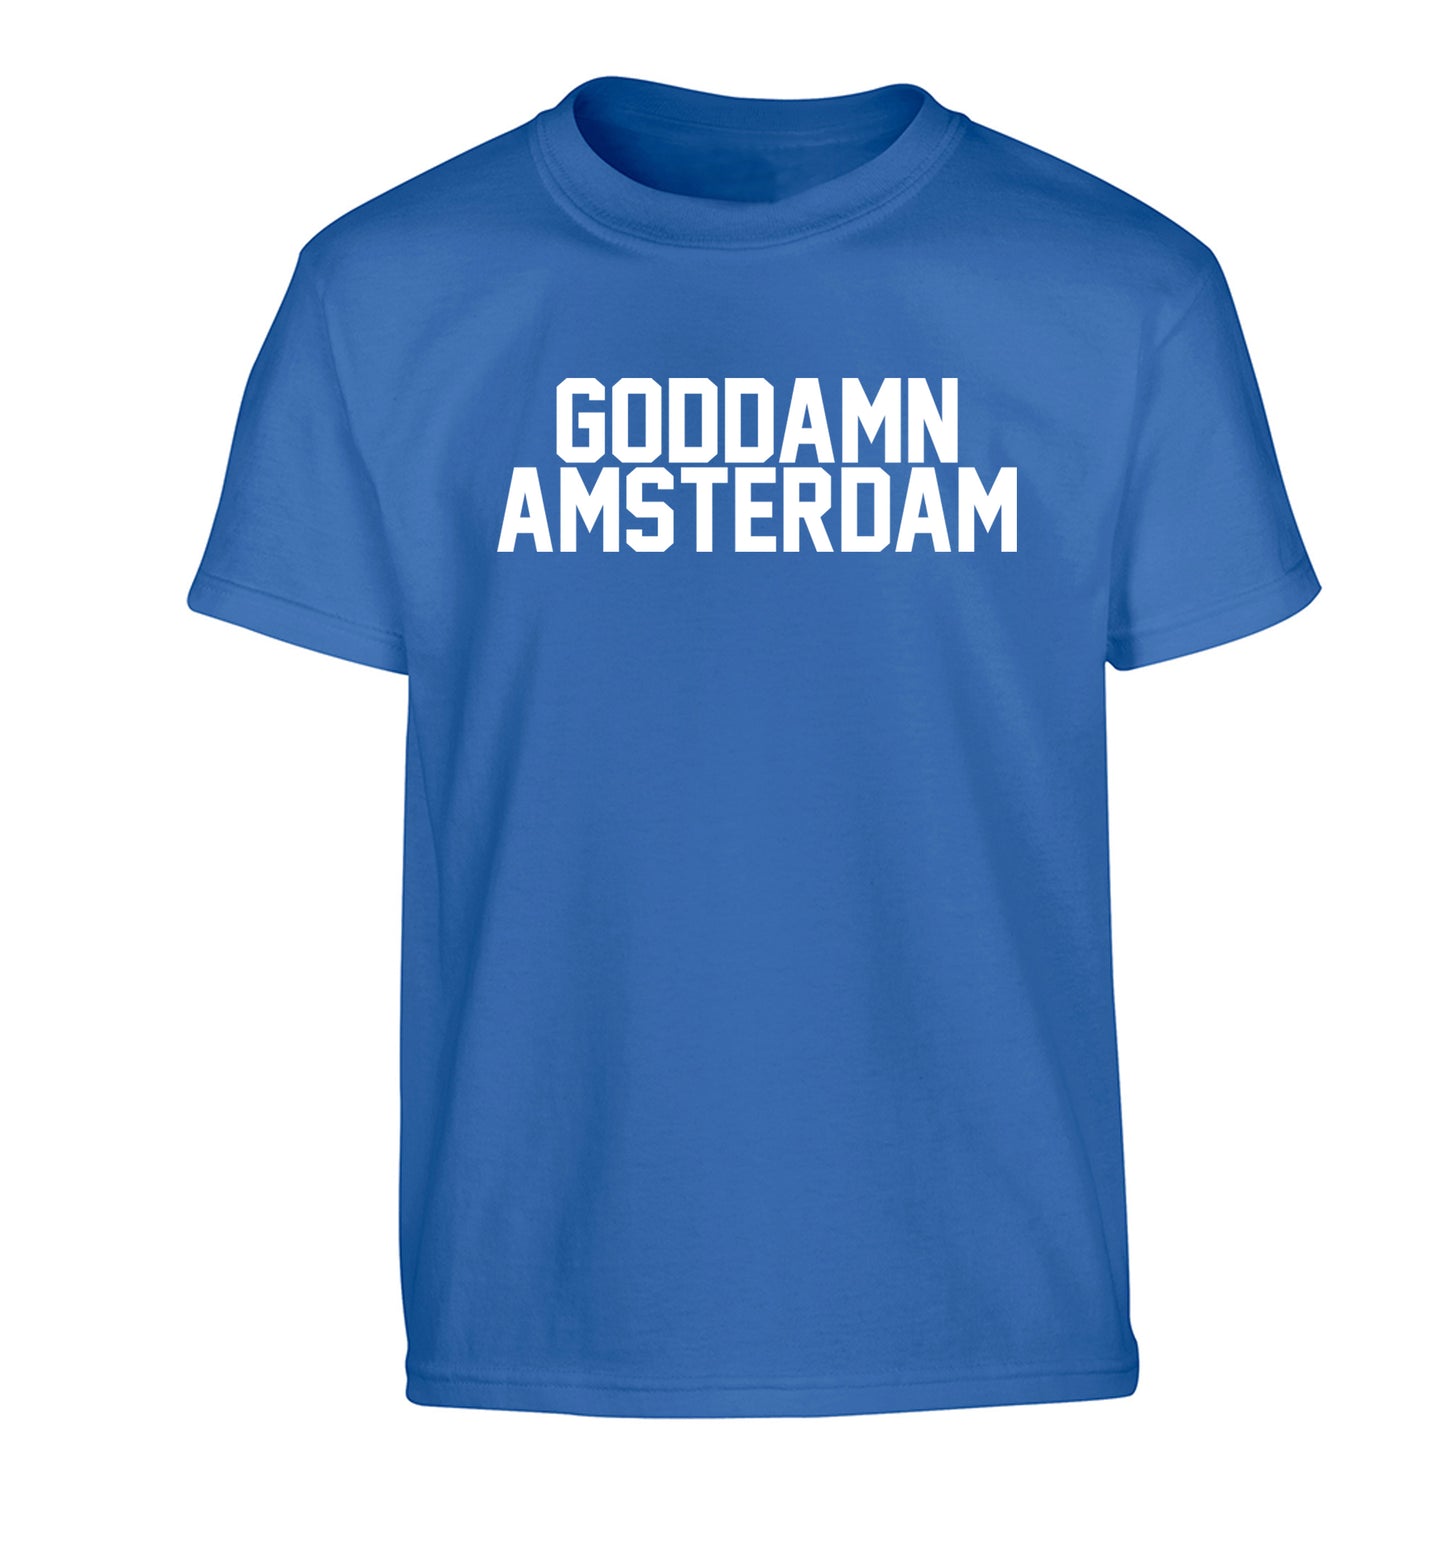 Goddamn Amsterdam Children's blue Tshirt 12-13 Years